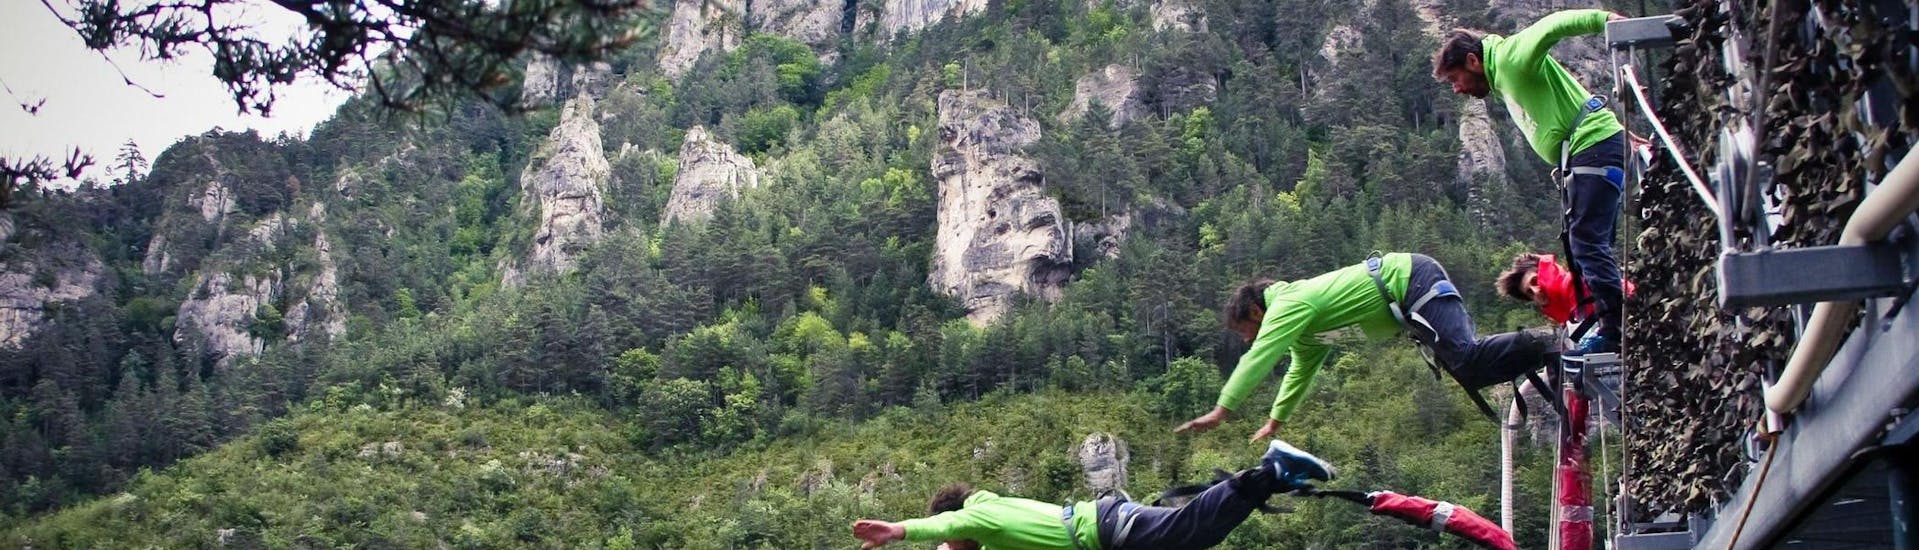 Un homme fait un saut durant son Saut à l'élastique "Le 107" dans les Gorges du Tarn (107m) avec Elastic Natural Bungee.